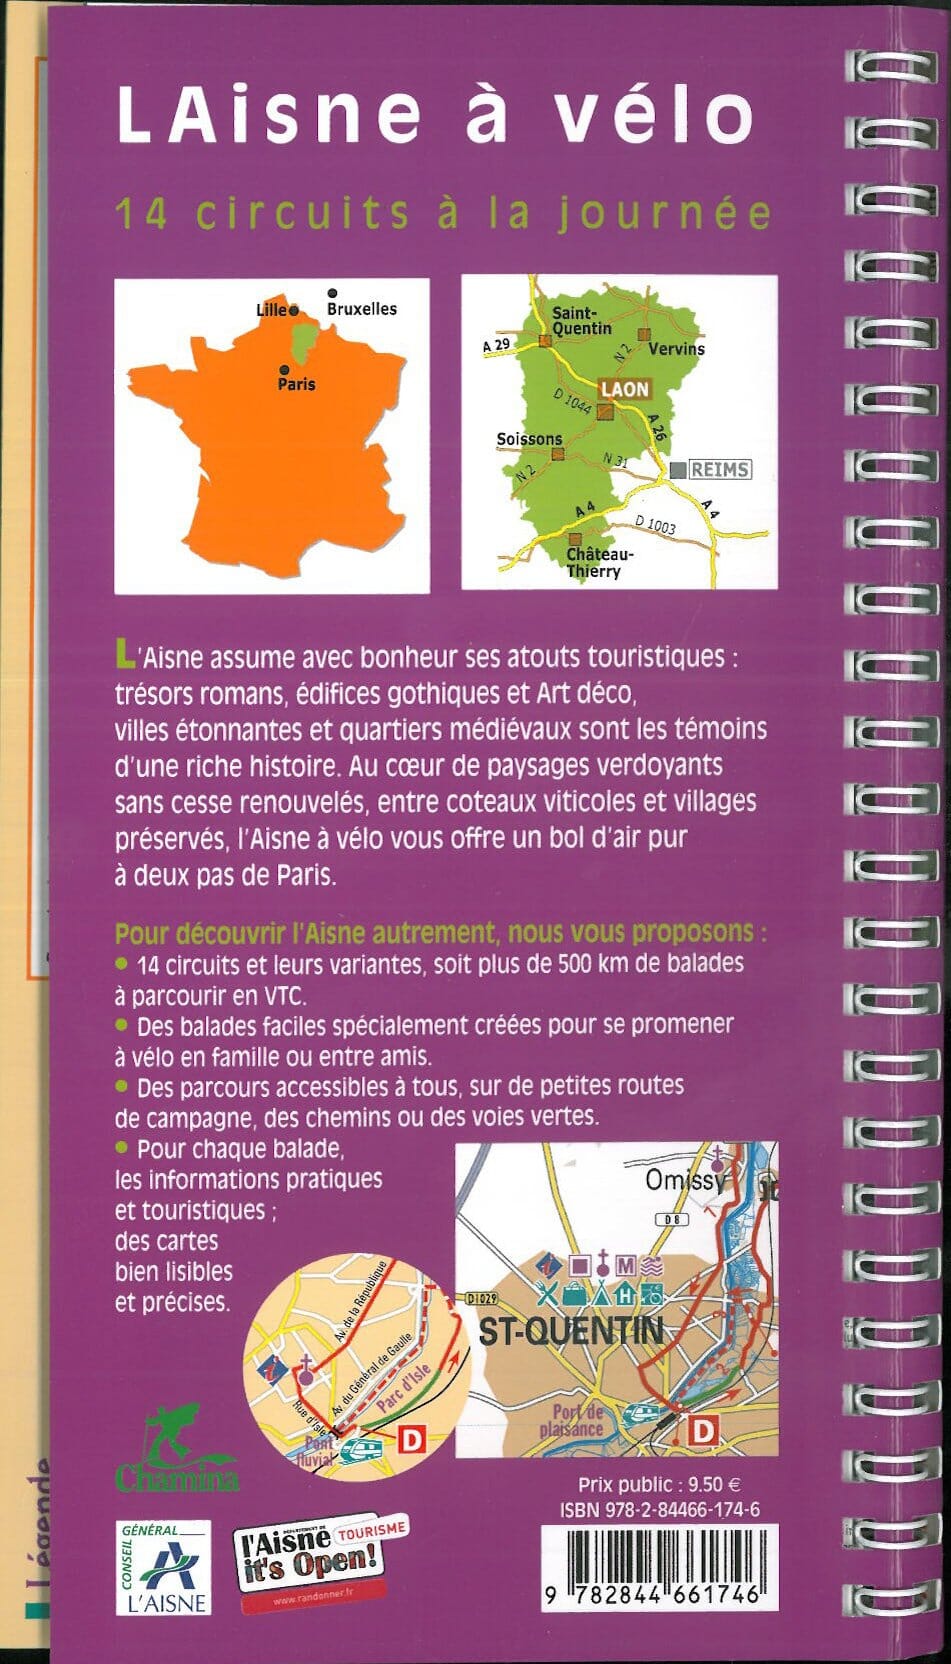 Guide vélo - Aisne - 14 circuits à la journée | Chamina guide petit format Chamina 